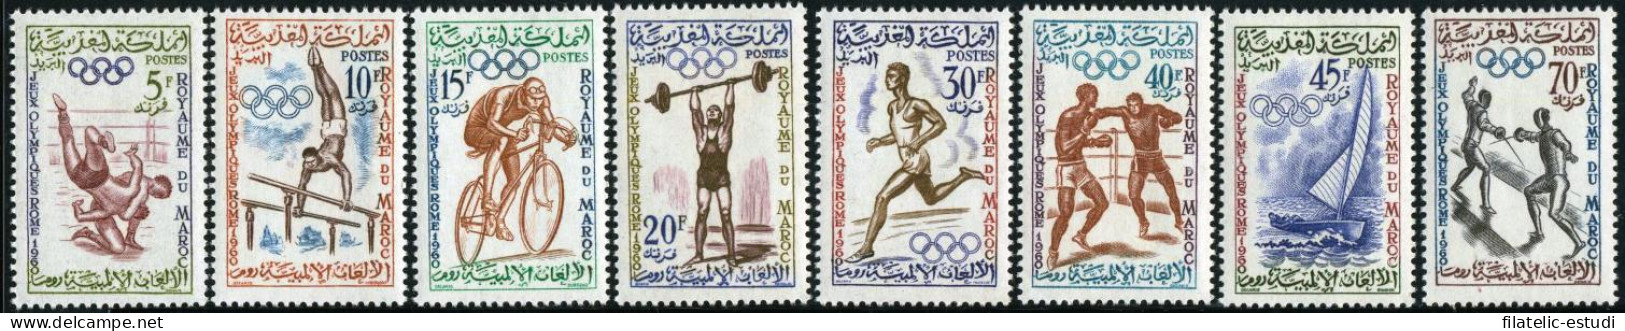 DEP6/S Marruecos Fr. Morocco Nº 413/20 1960 JJOO De Roma Anillos Olímpicos Dep - Autres - Afrique